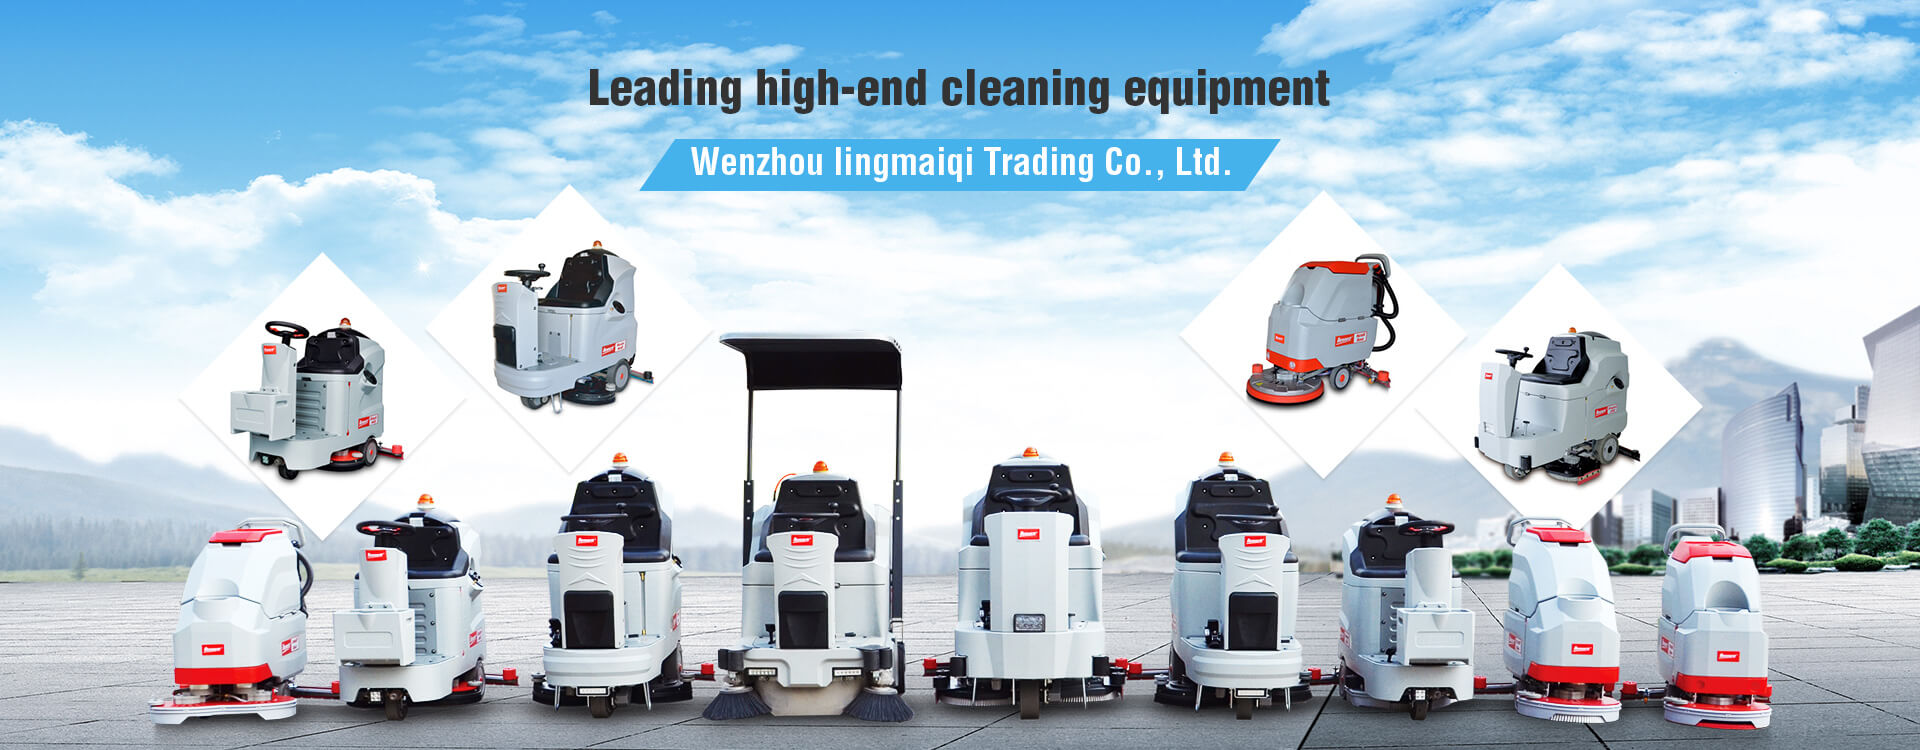 Wenzhou Lingmaiqi Trading Co., Ltd.